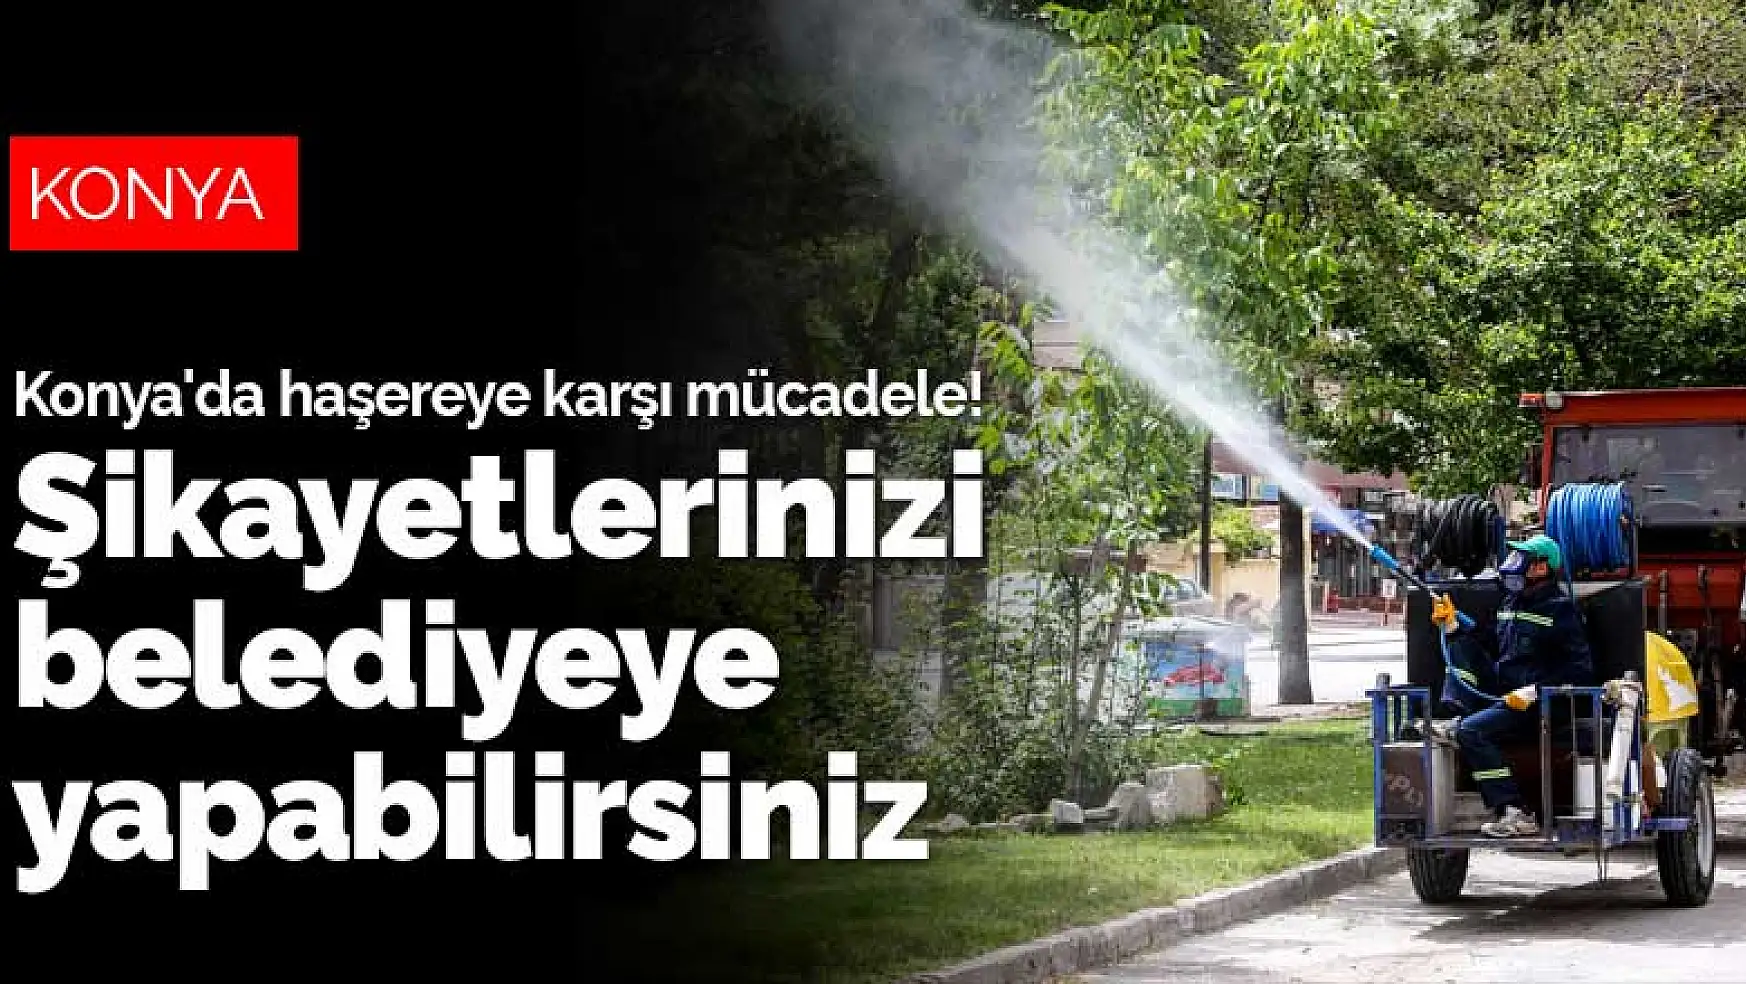 Konya'da haşereye karşı etkin mücadele! Şikayetlerinizi belediyeye yapabilirsiniz